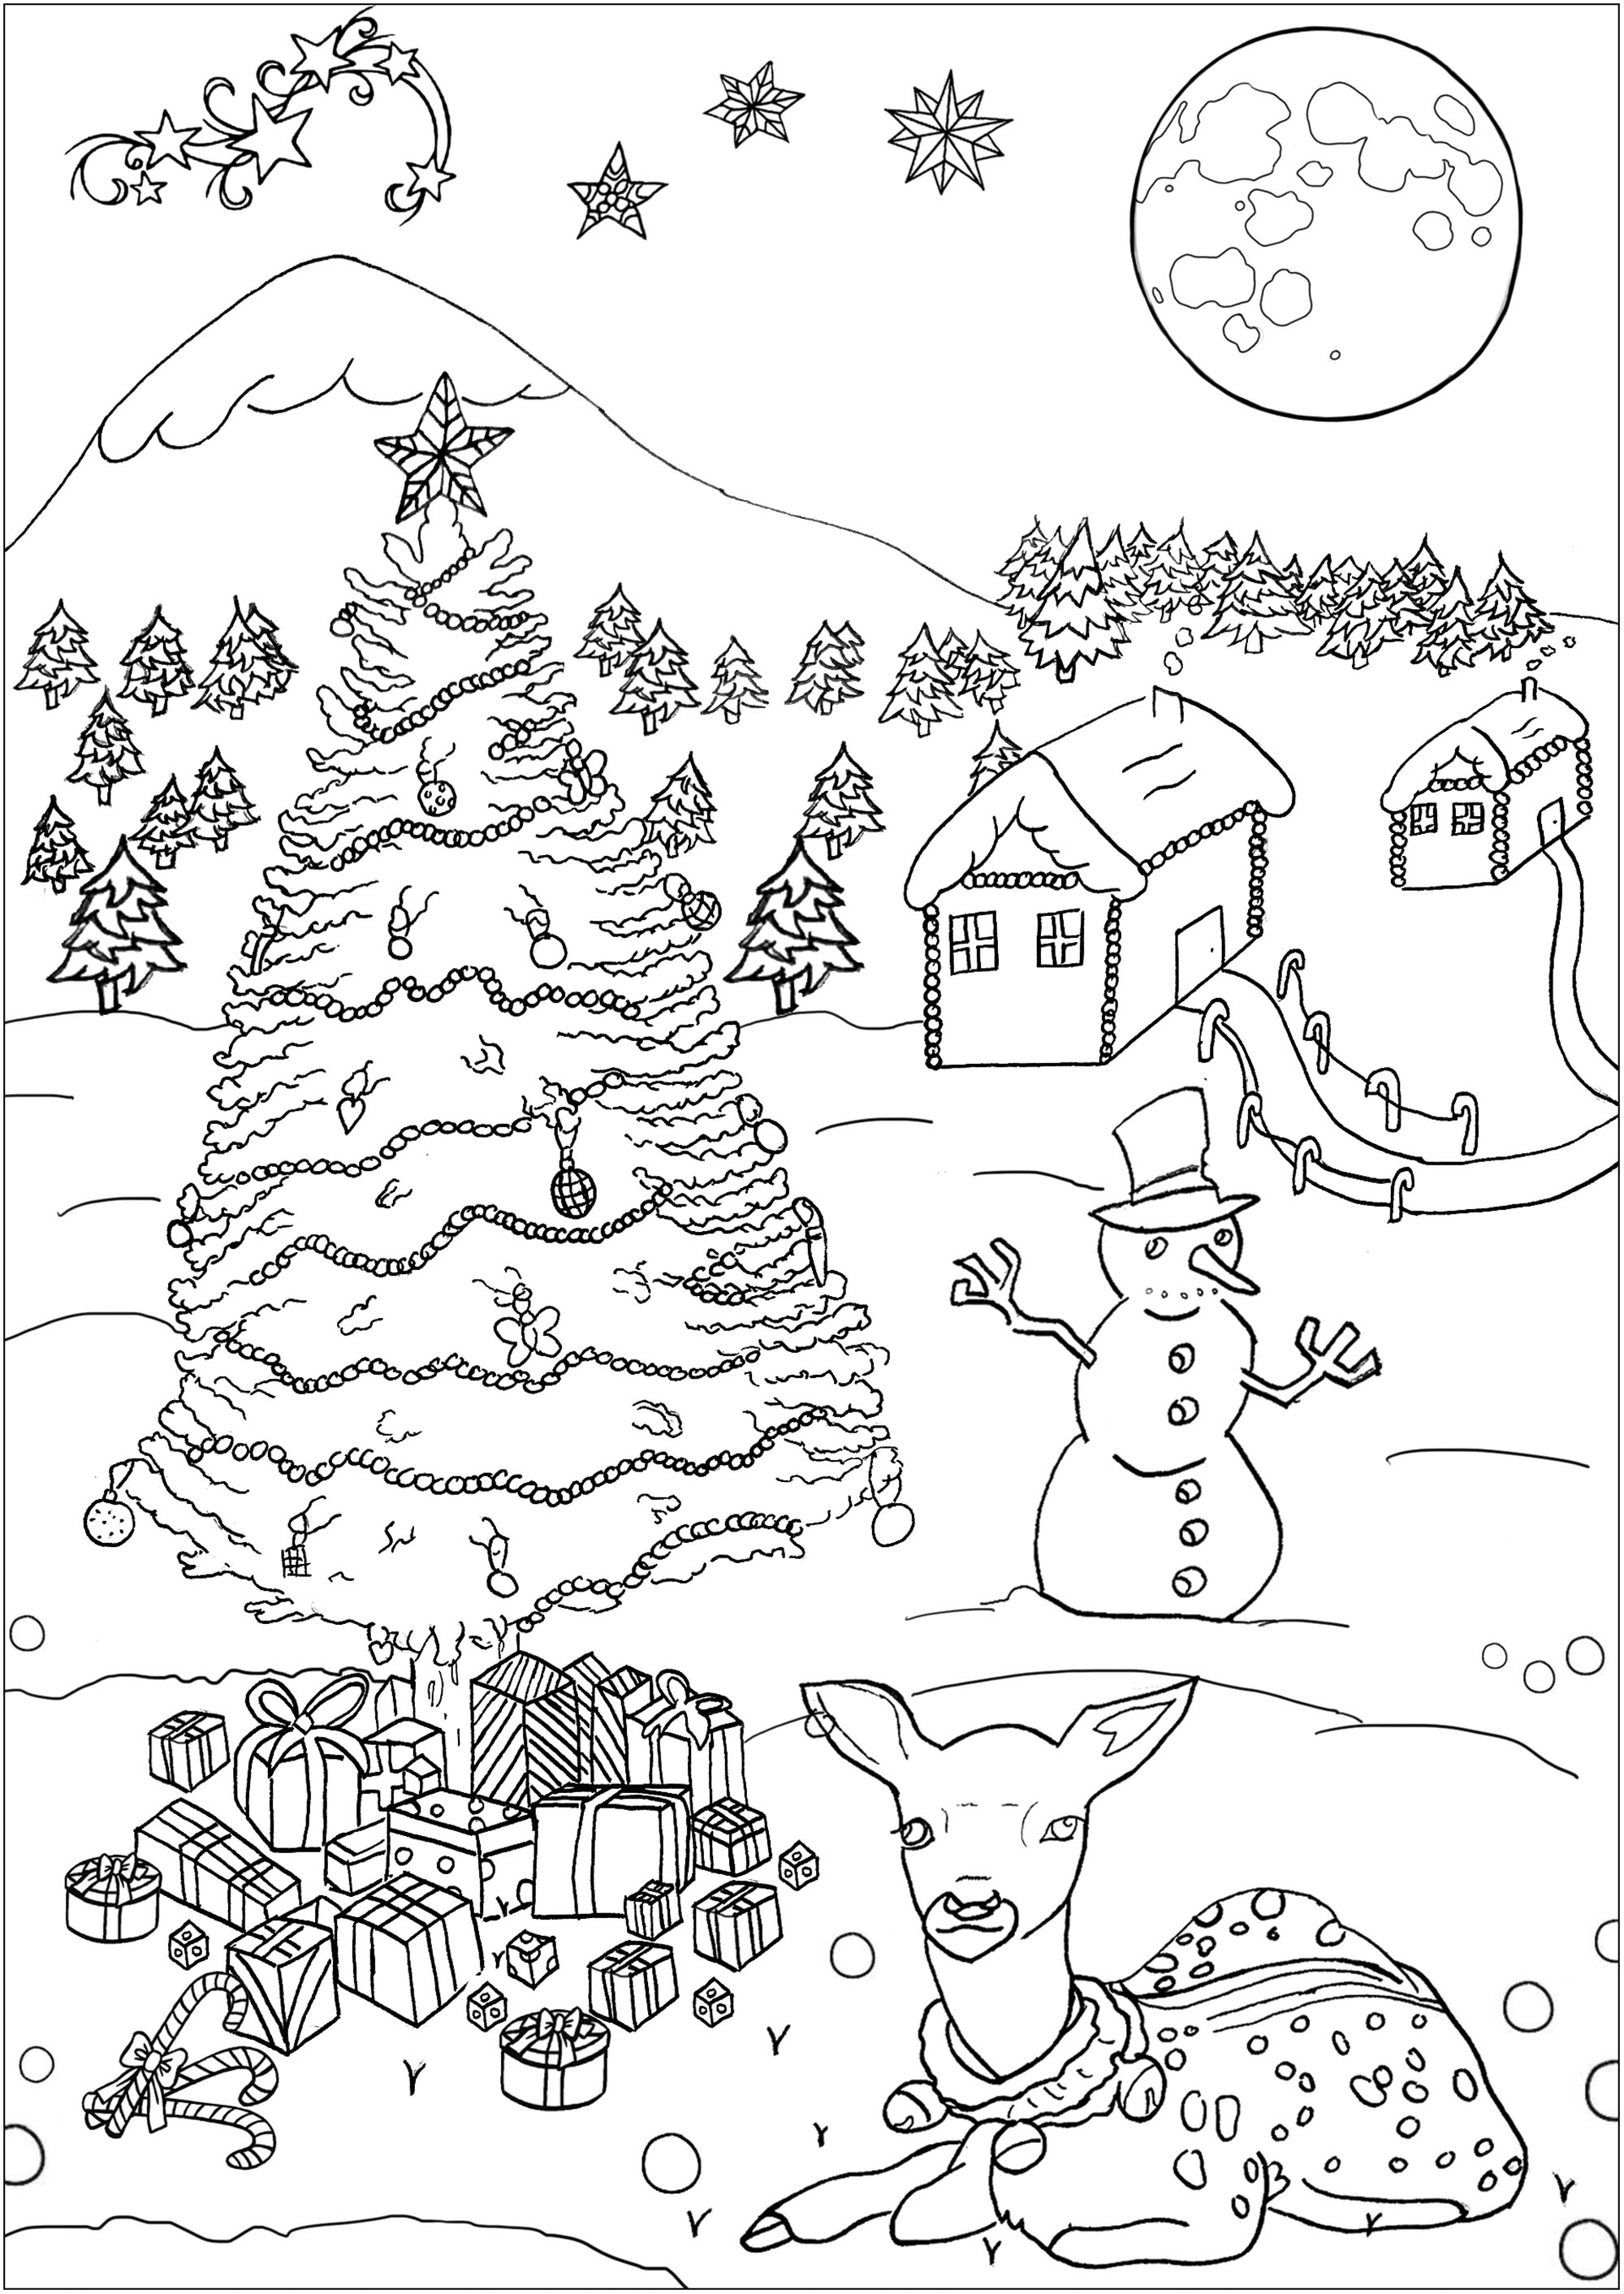 Desenho de Natal para colorir, com uma bonita cabana, uma árvore, um boneco de neve, presentes e uma bonita rena, Artista : Gamma